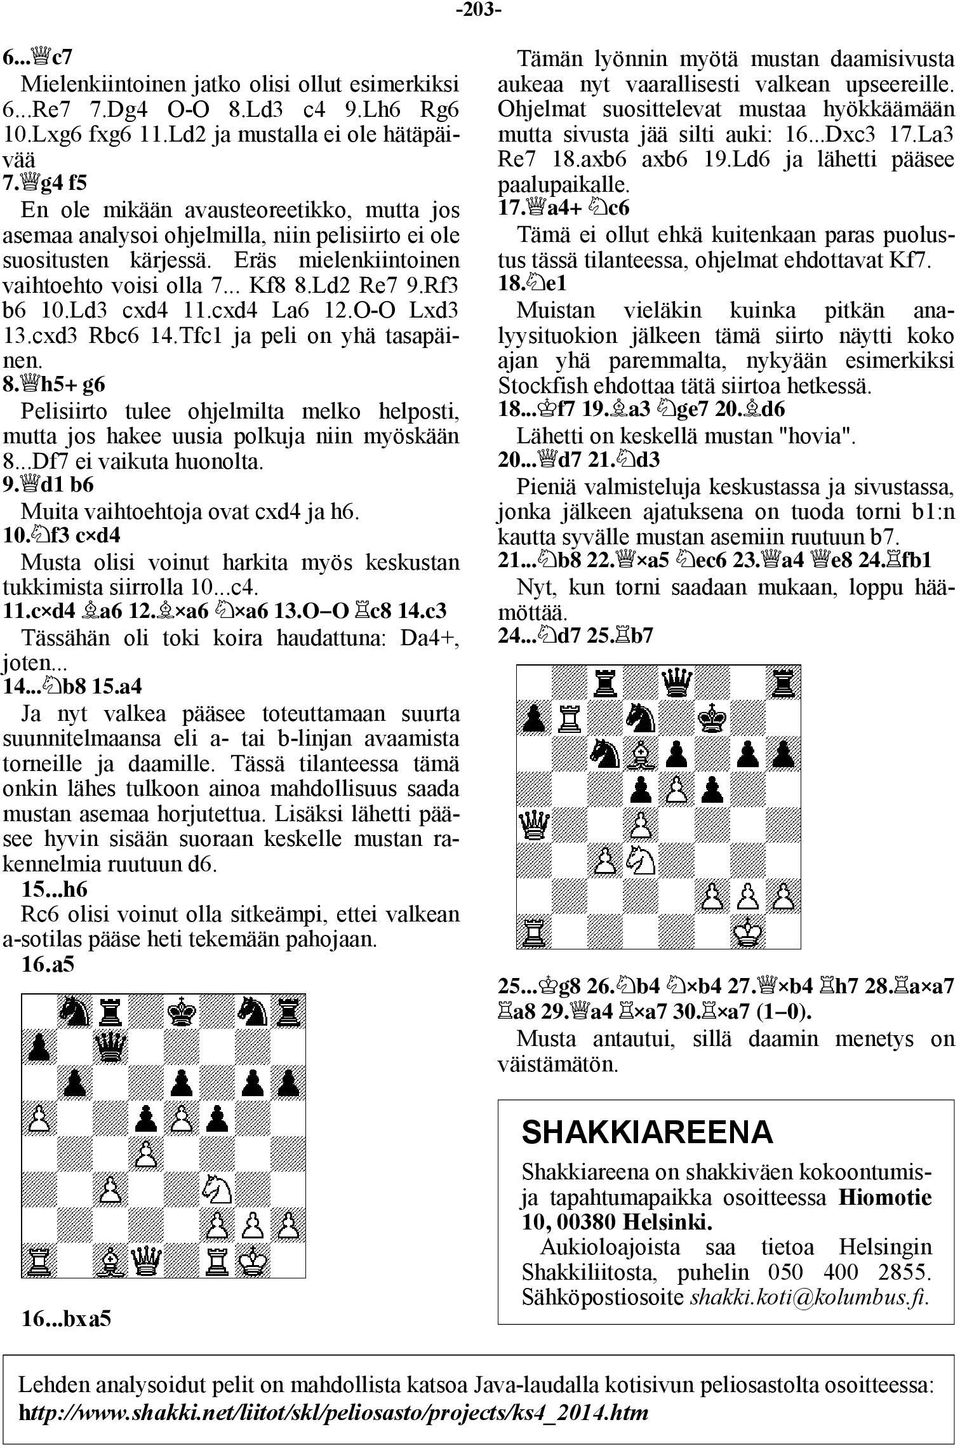 Eräs mielenkiintoinen vaihtoehto voisi olla 7... Kf8 8.Ld2 Re7 9.Rf3 b6 10.Ld3 cxd4 11.cxd4 La6 12.O-O Lxd3 13.cxd3 Rbc6 14.Tfc1 ja peli on yhä tasapäinen. 9/Ei6,!h7!